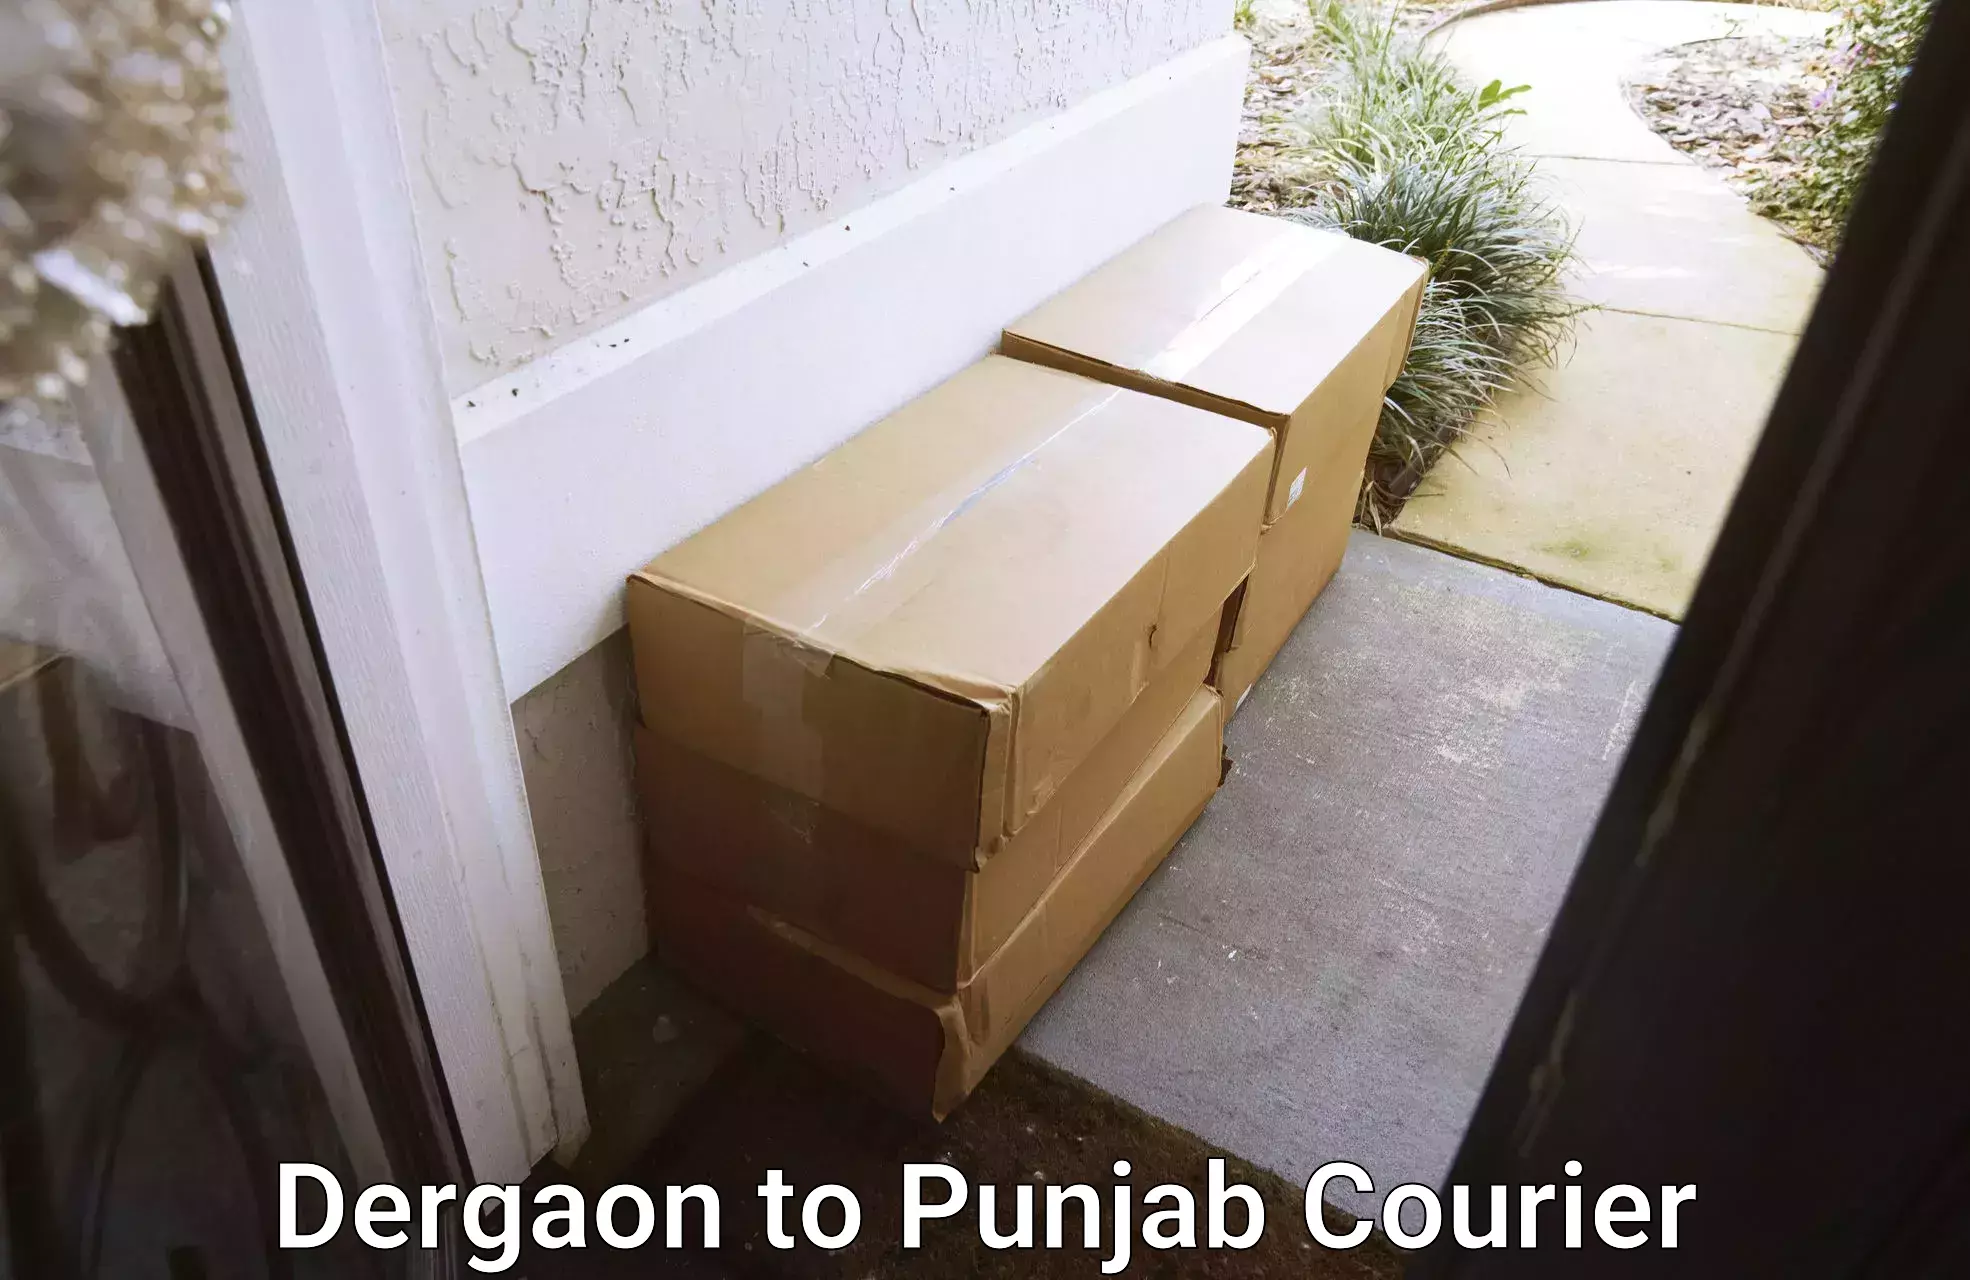 Residential courier service Dergaon to Rupnagar